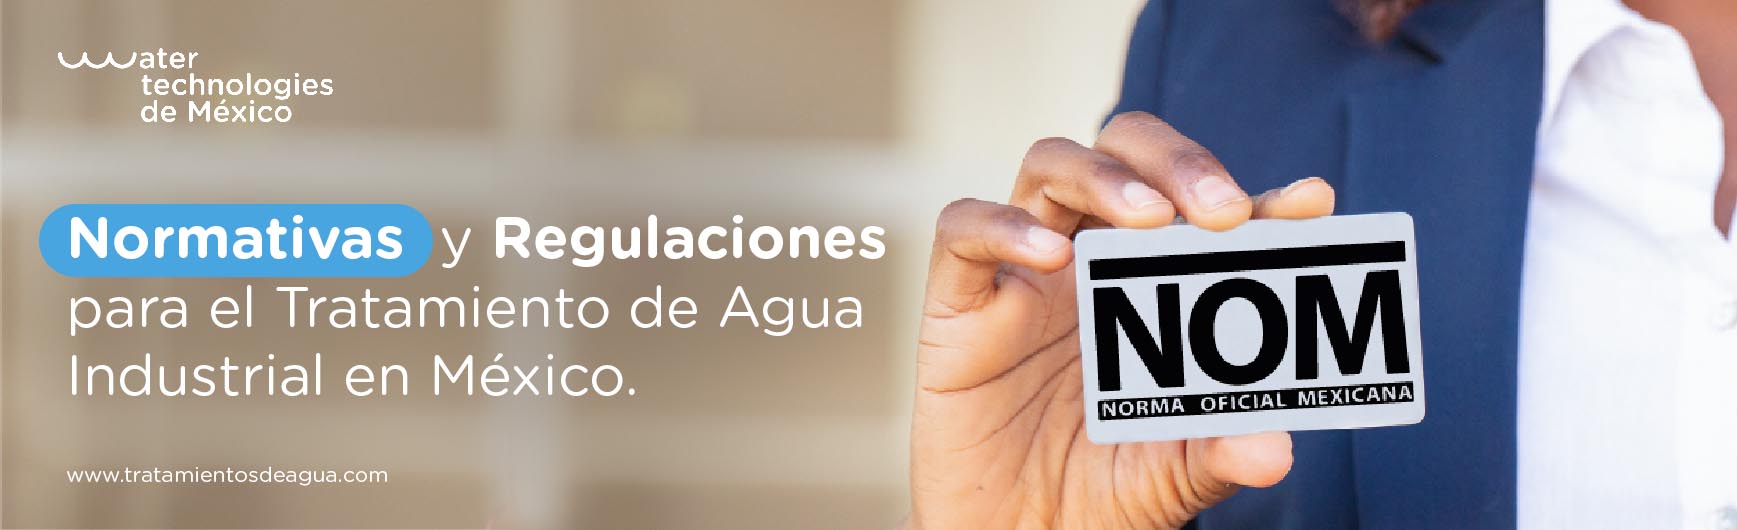 Normativas y Regulaciones para el Tratamiento de Agua Industrial en México.